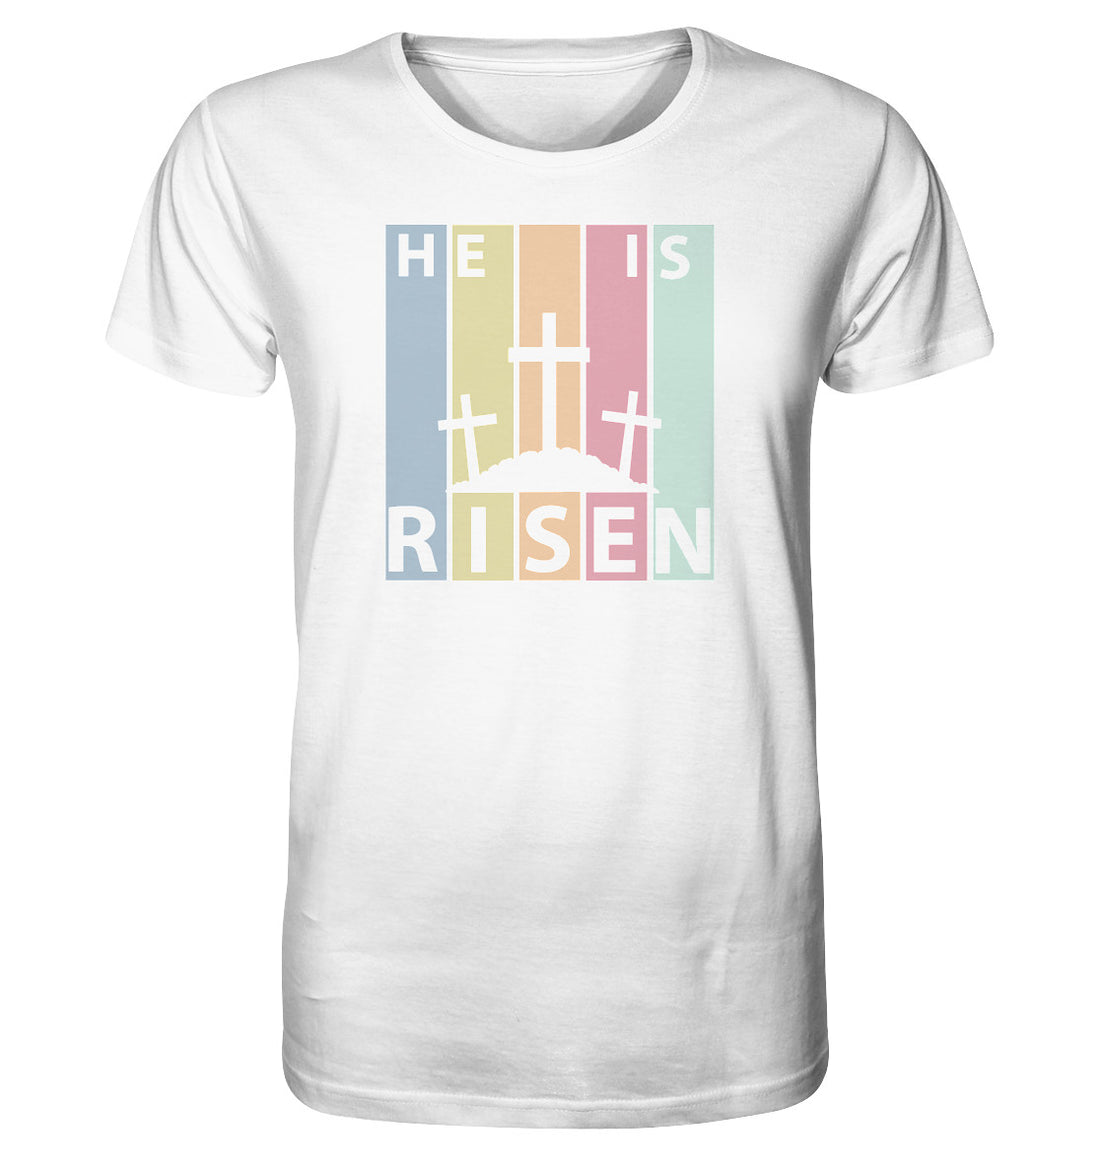 He is risen - Organic Shirt